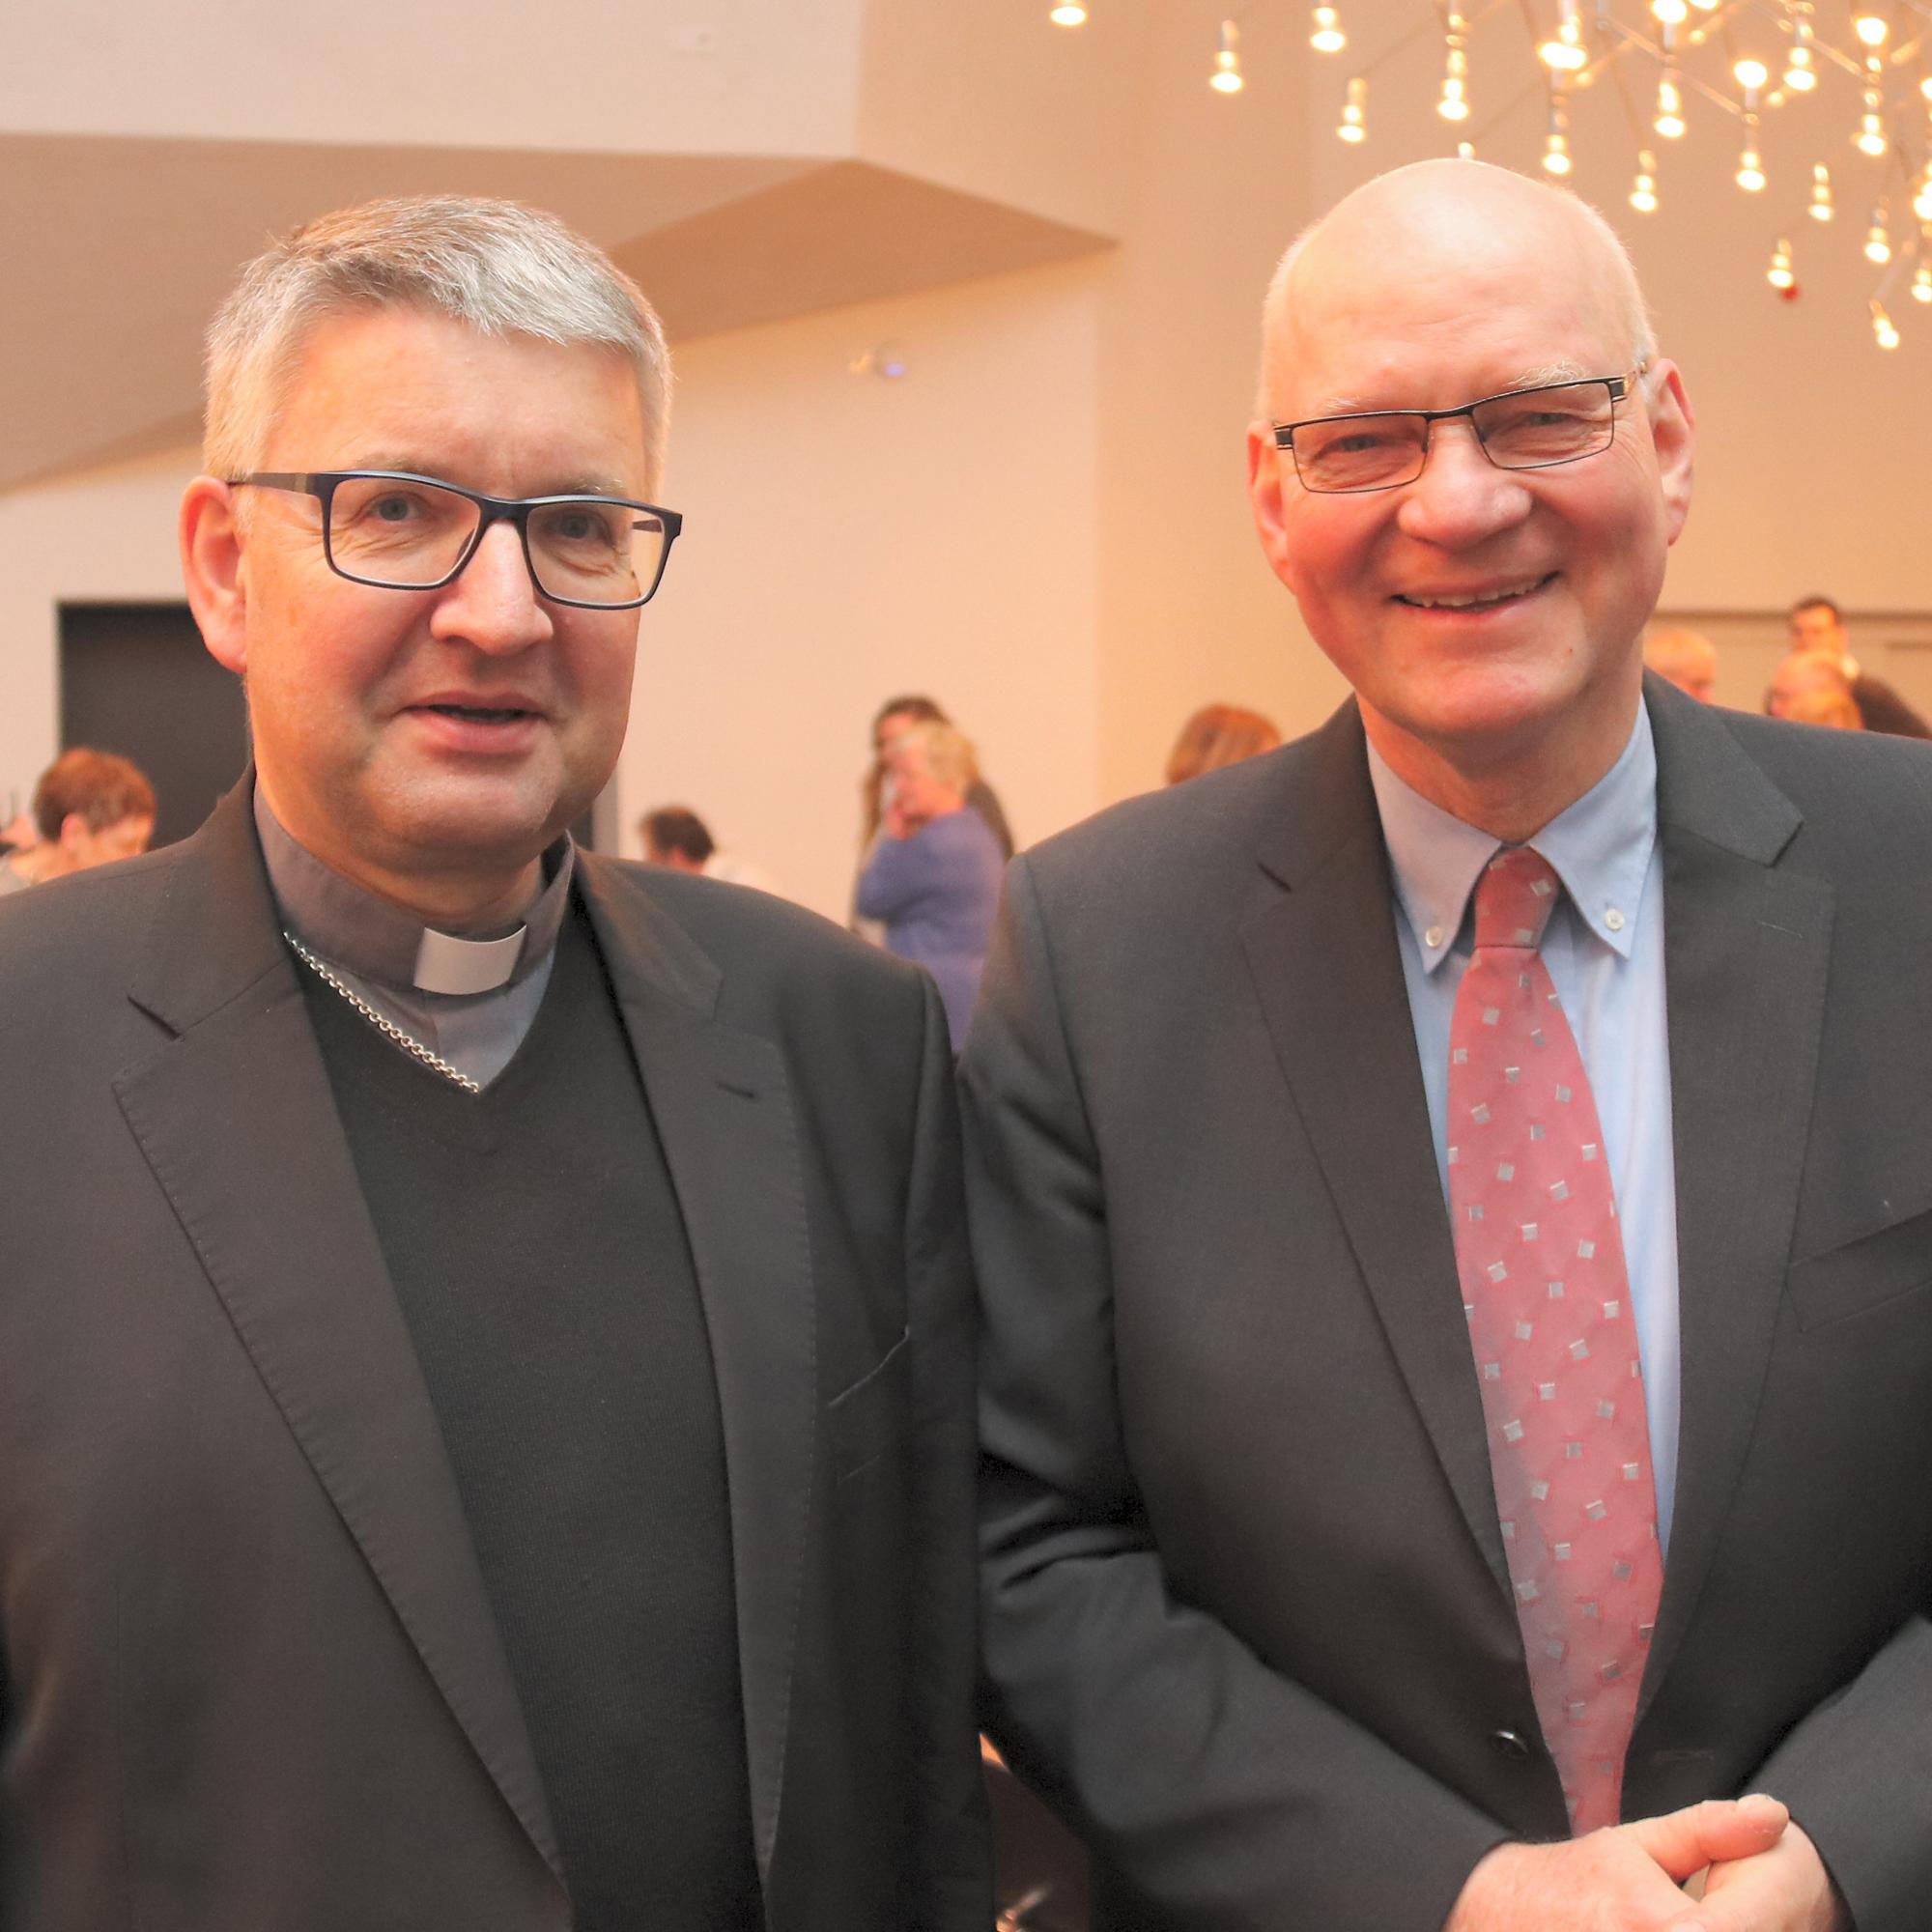 Mainz, 19.12.2018: Bischof Peter Kohlgraf (l.) würdigte die Verdienste von Thomas Drescher als 